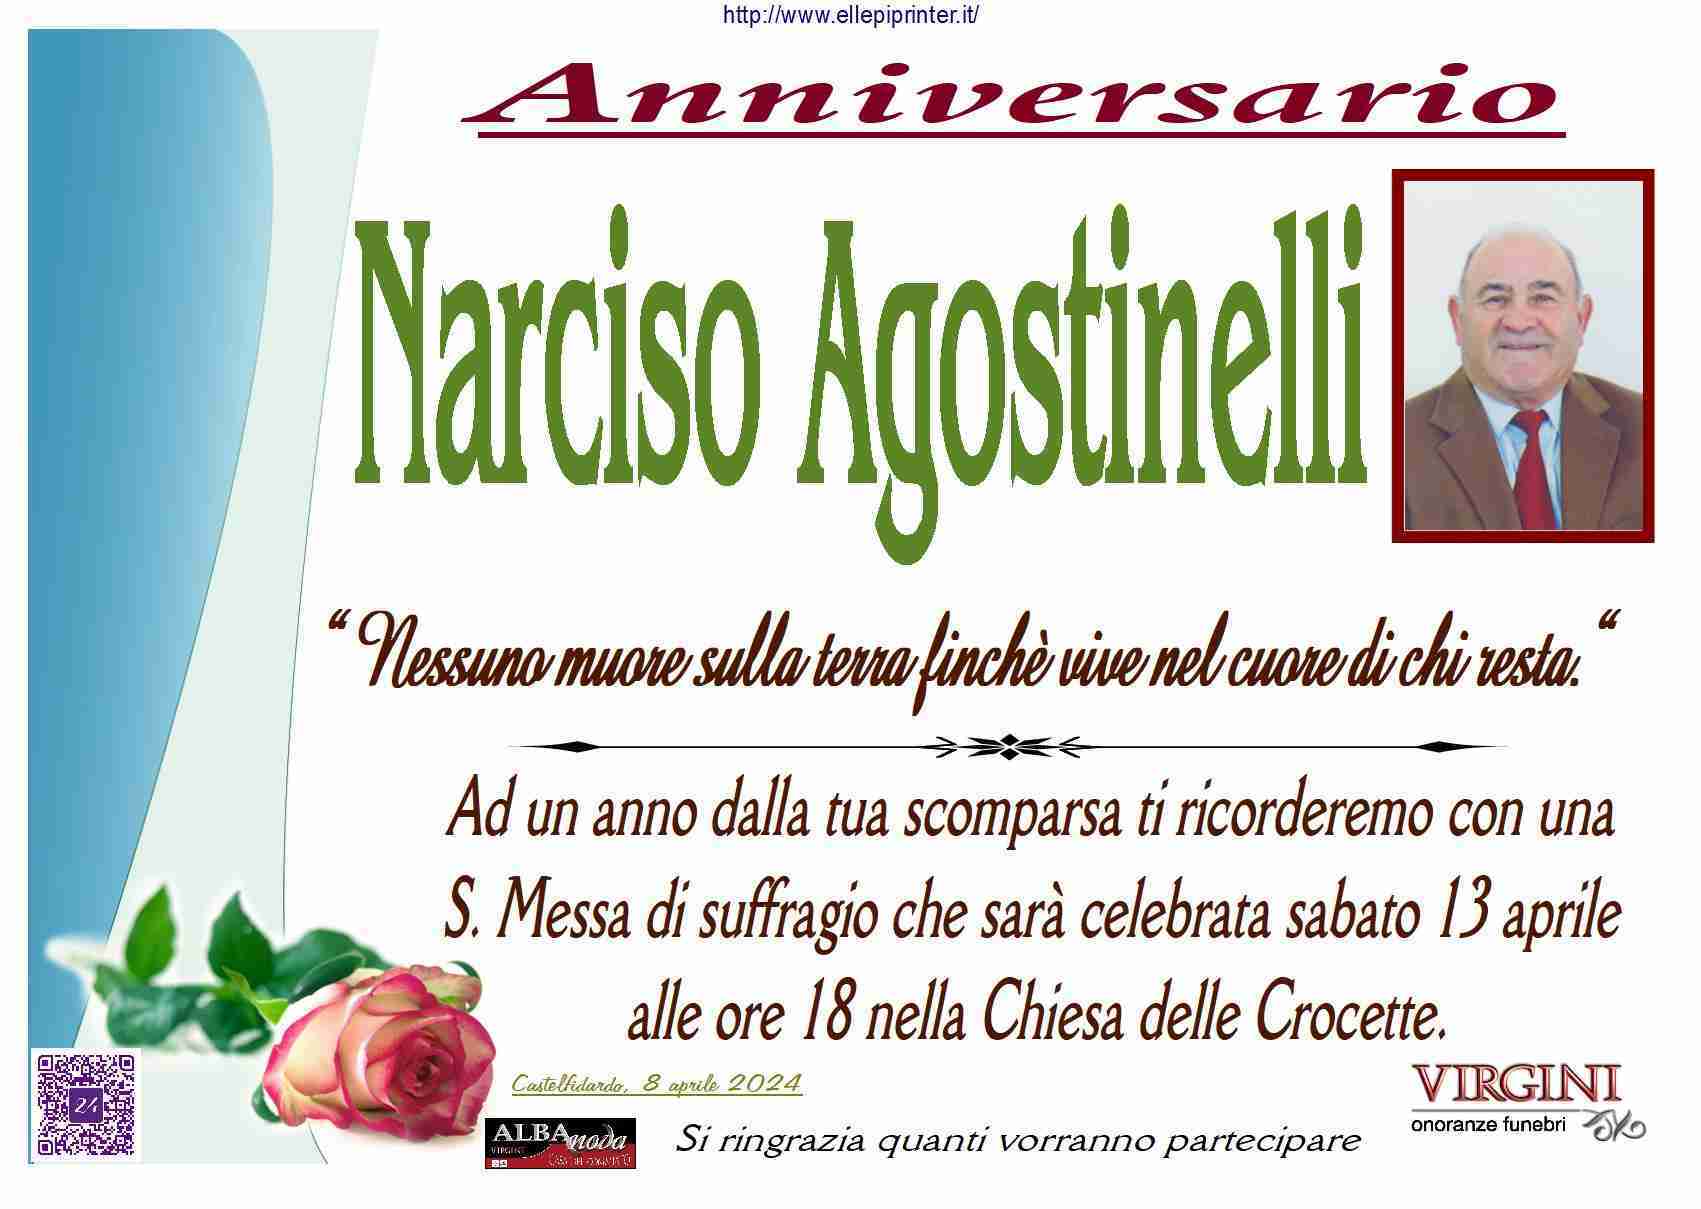 Narciso Agostinelli